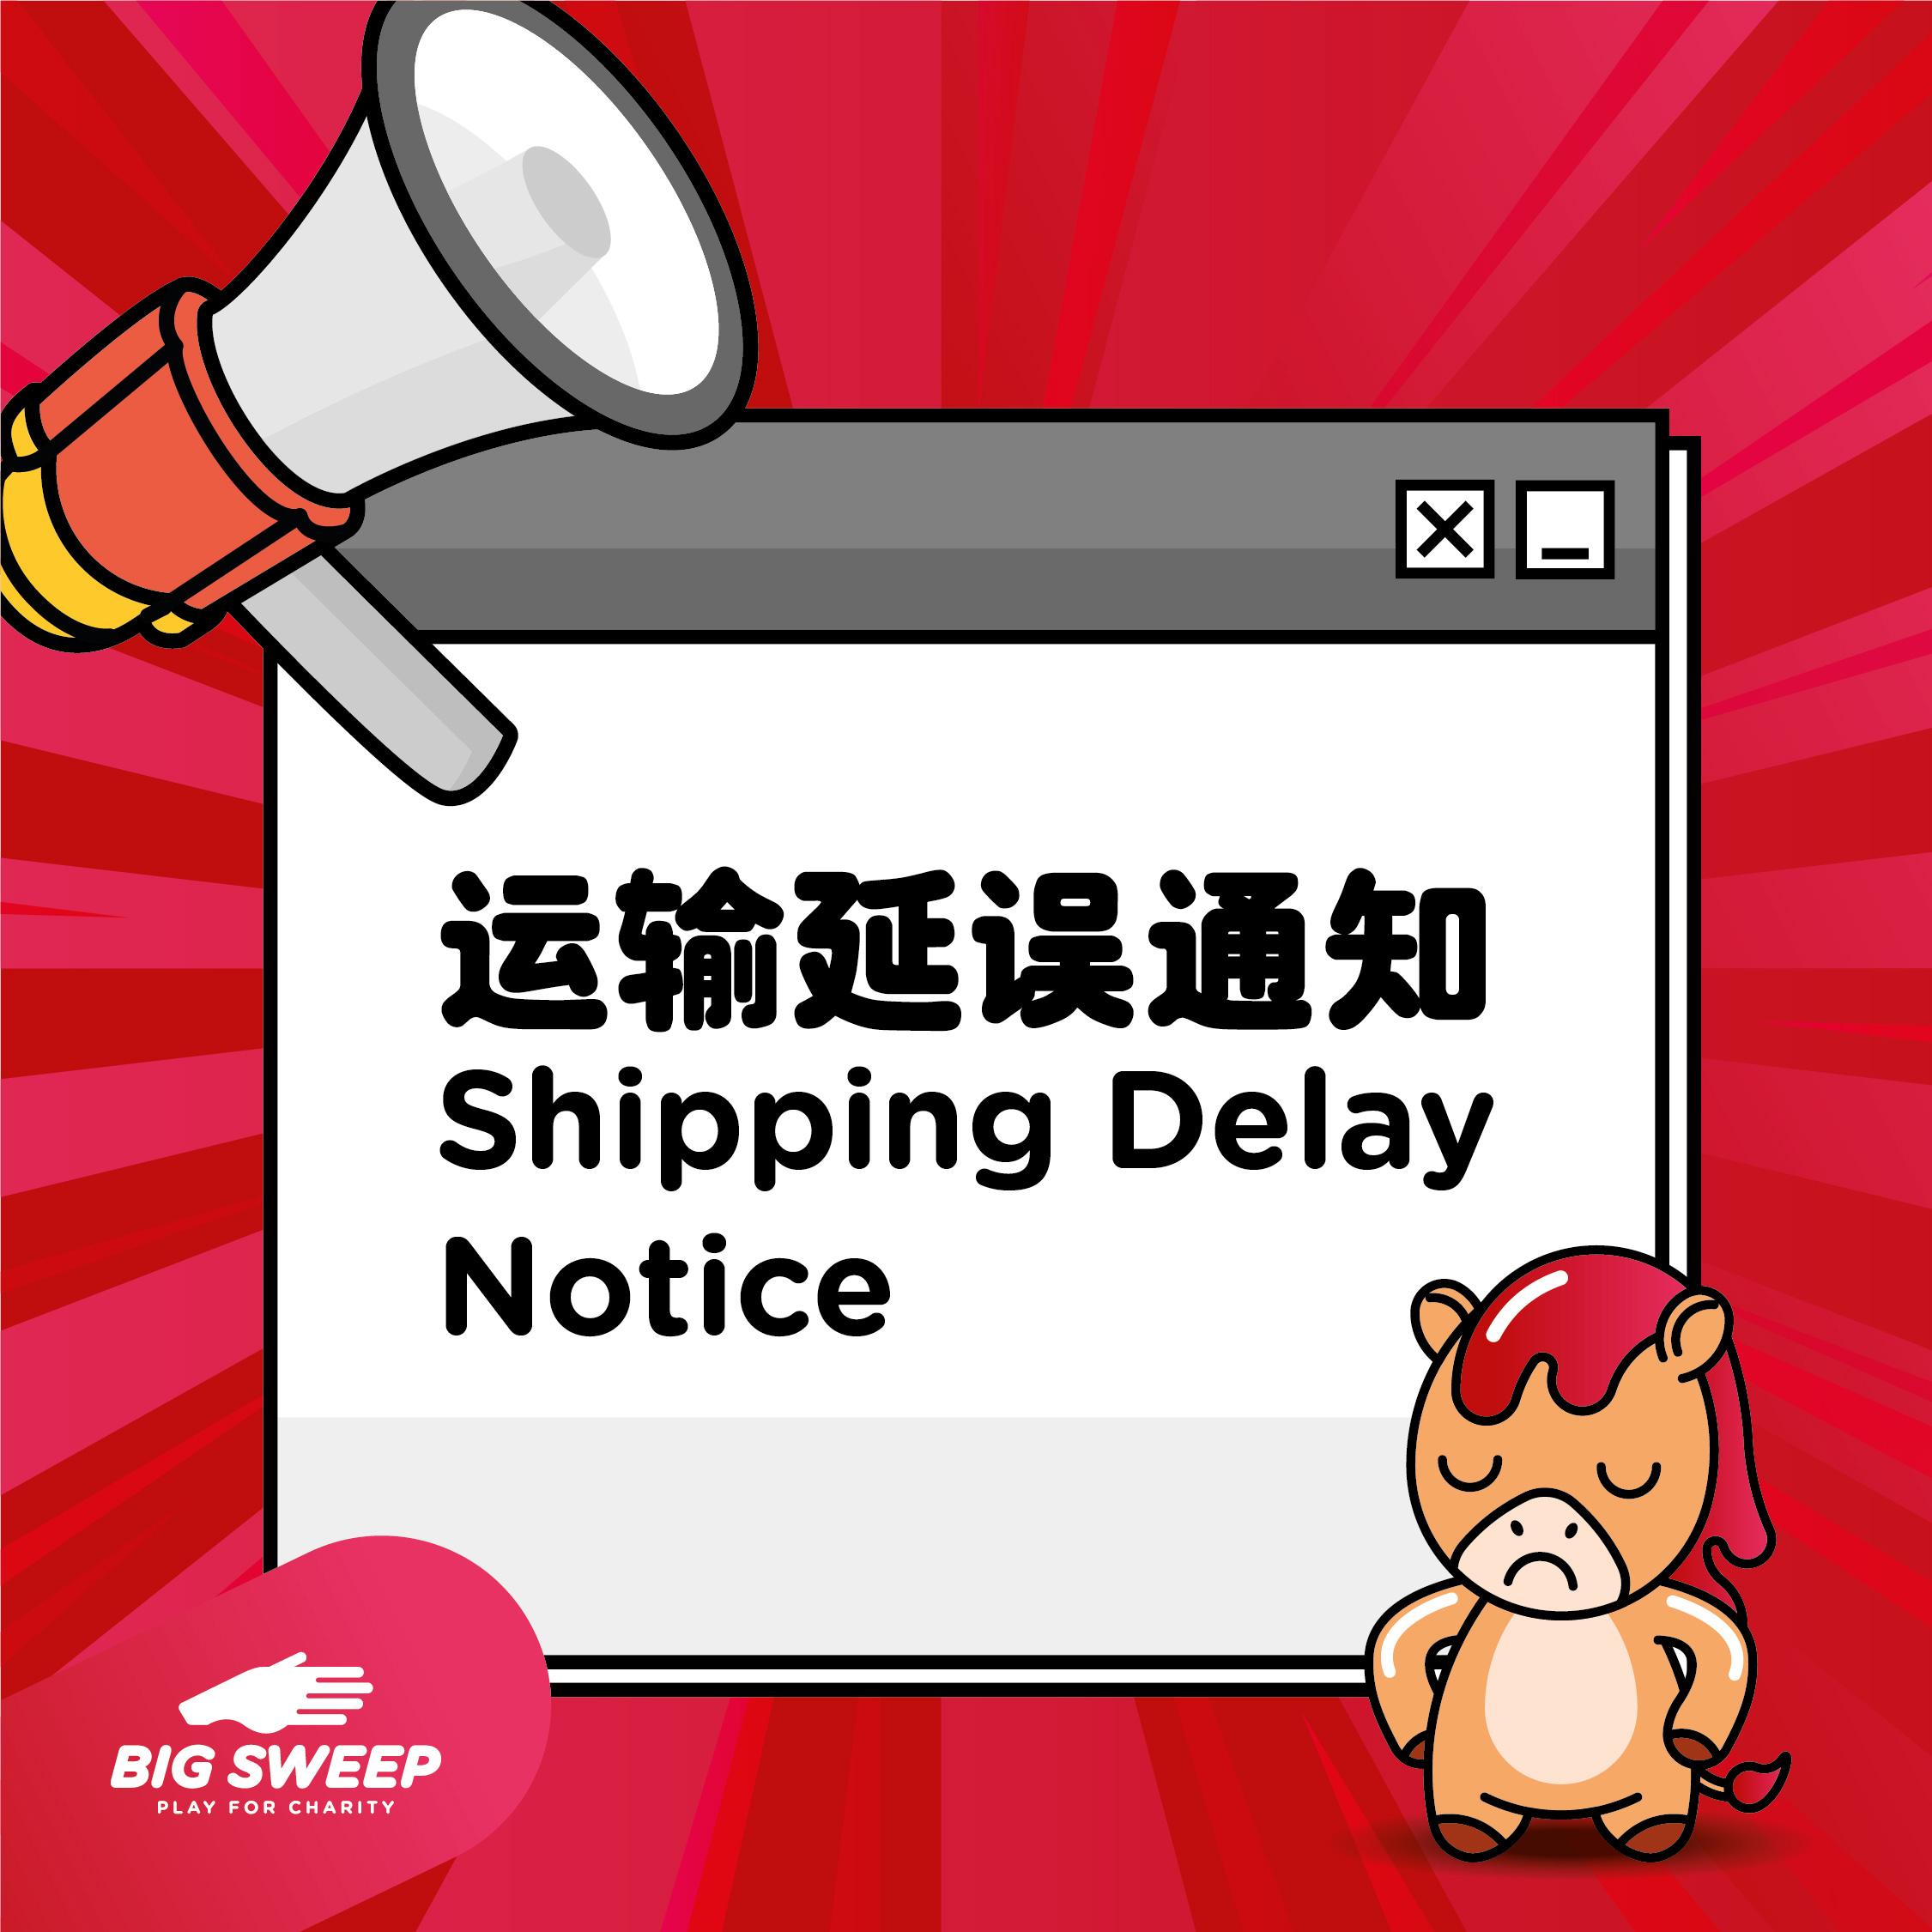 Shipping delay notice